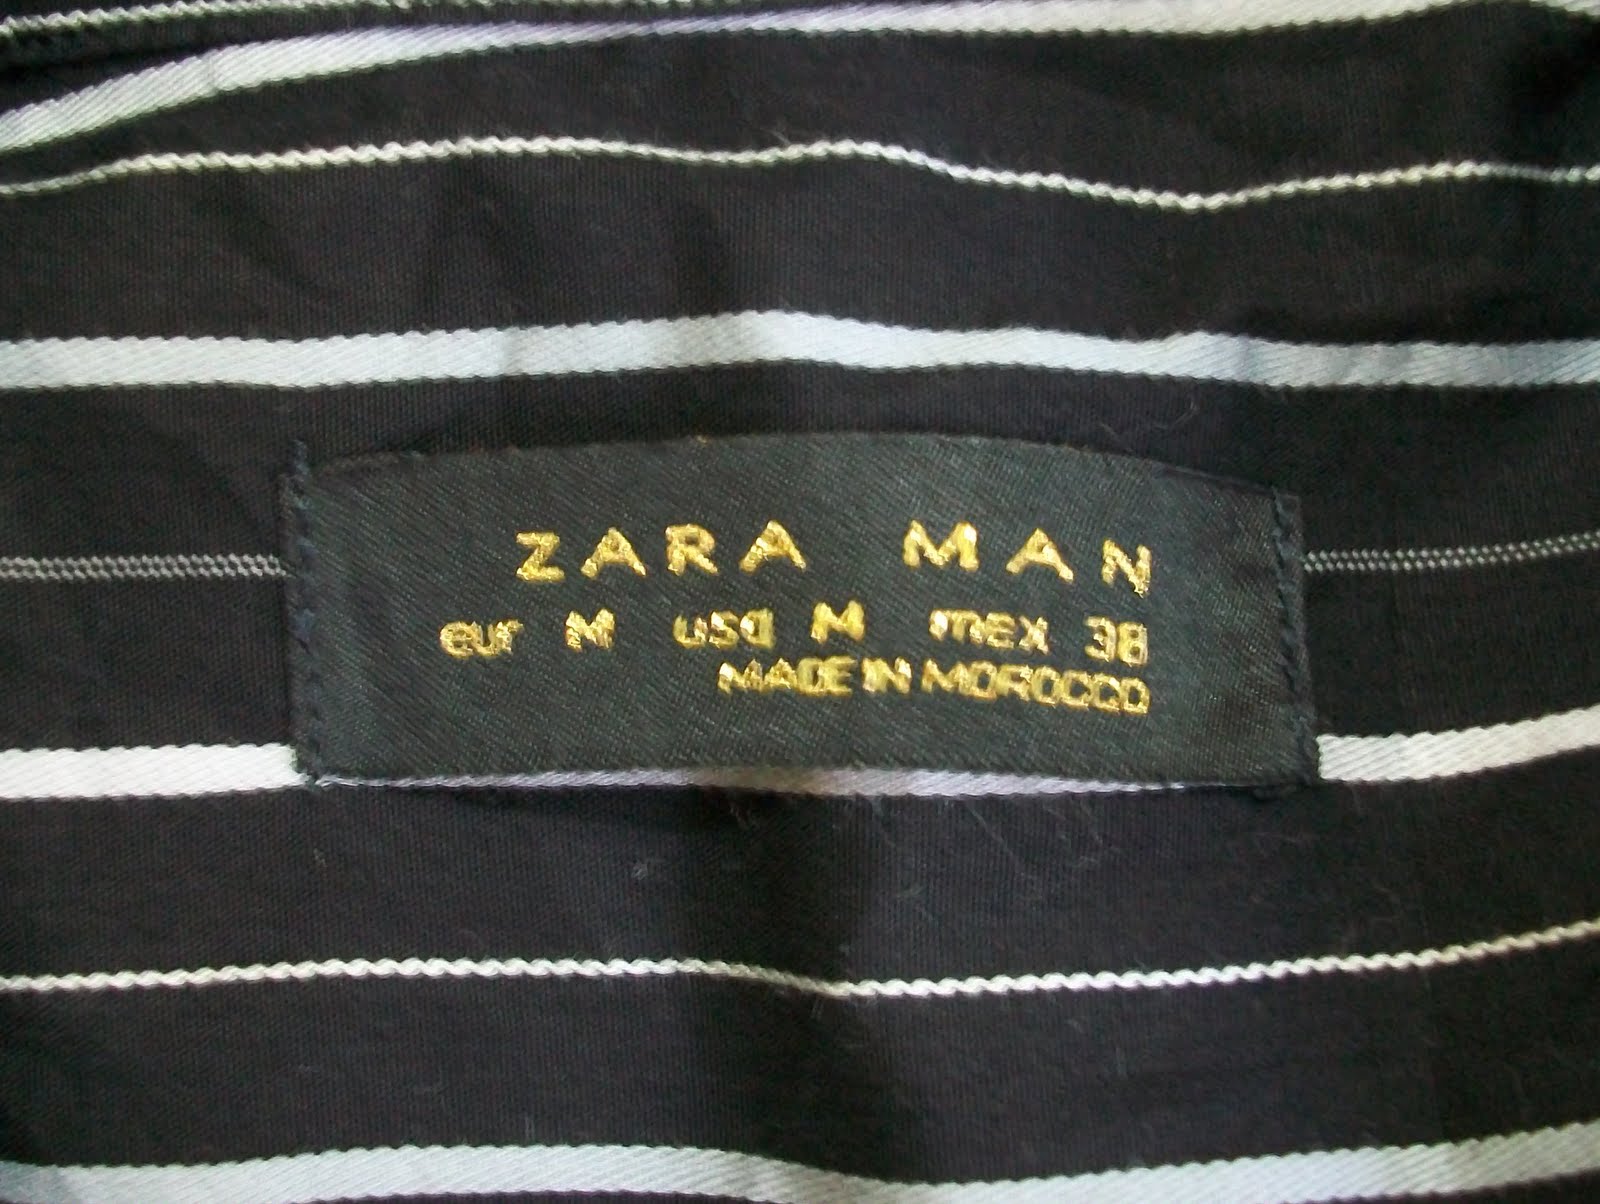 bundle maniac: Baju Kemeja Zara Made In Morocco (SOLD)